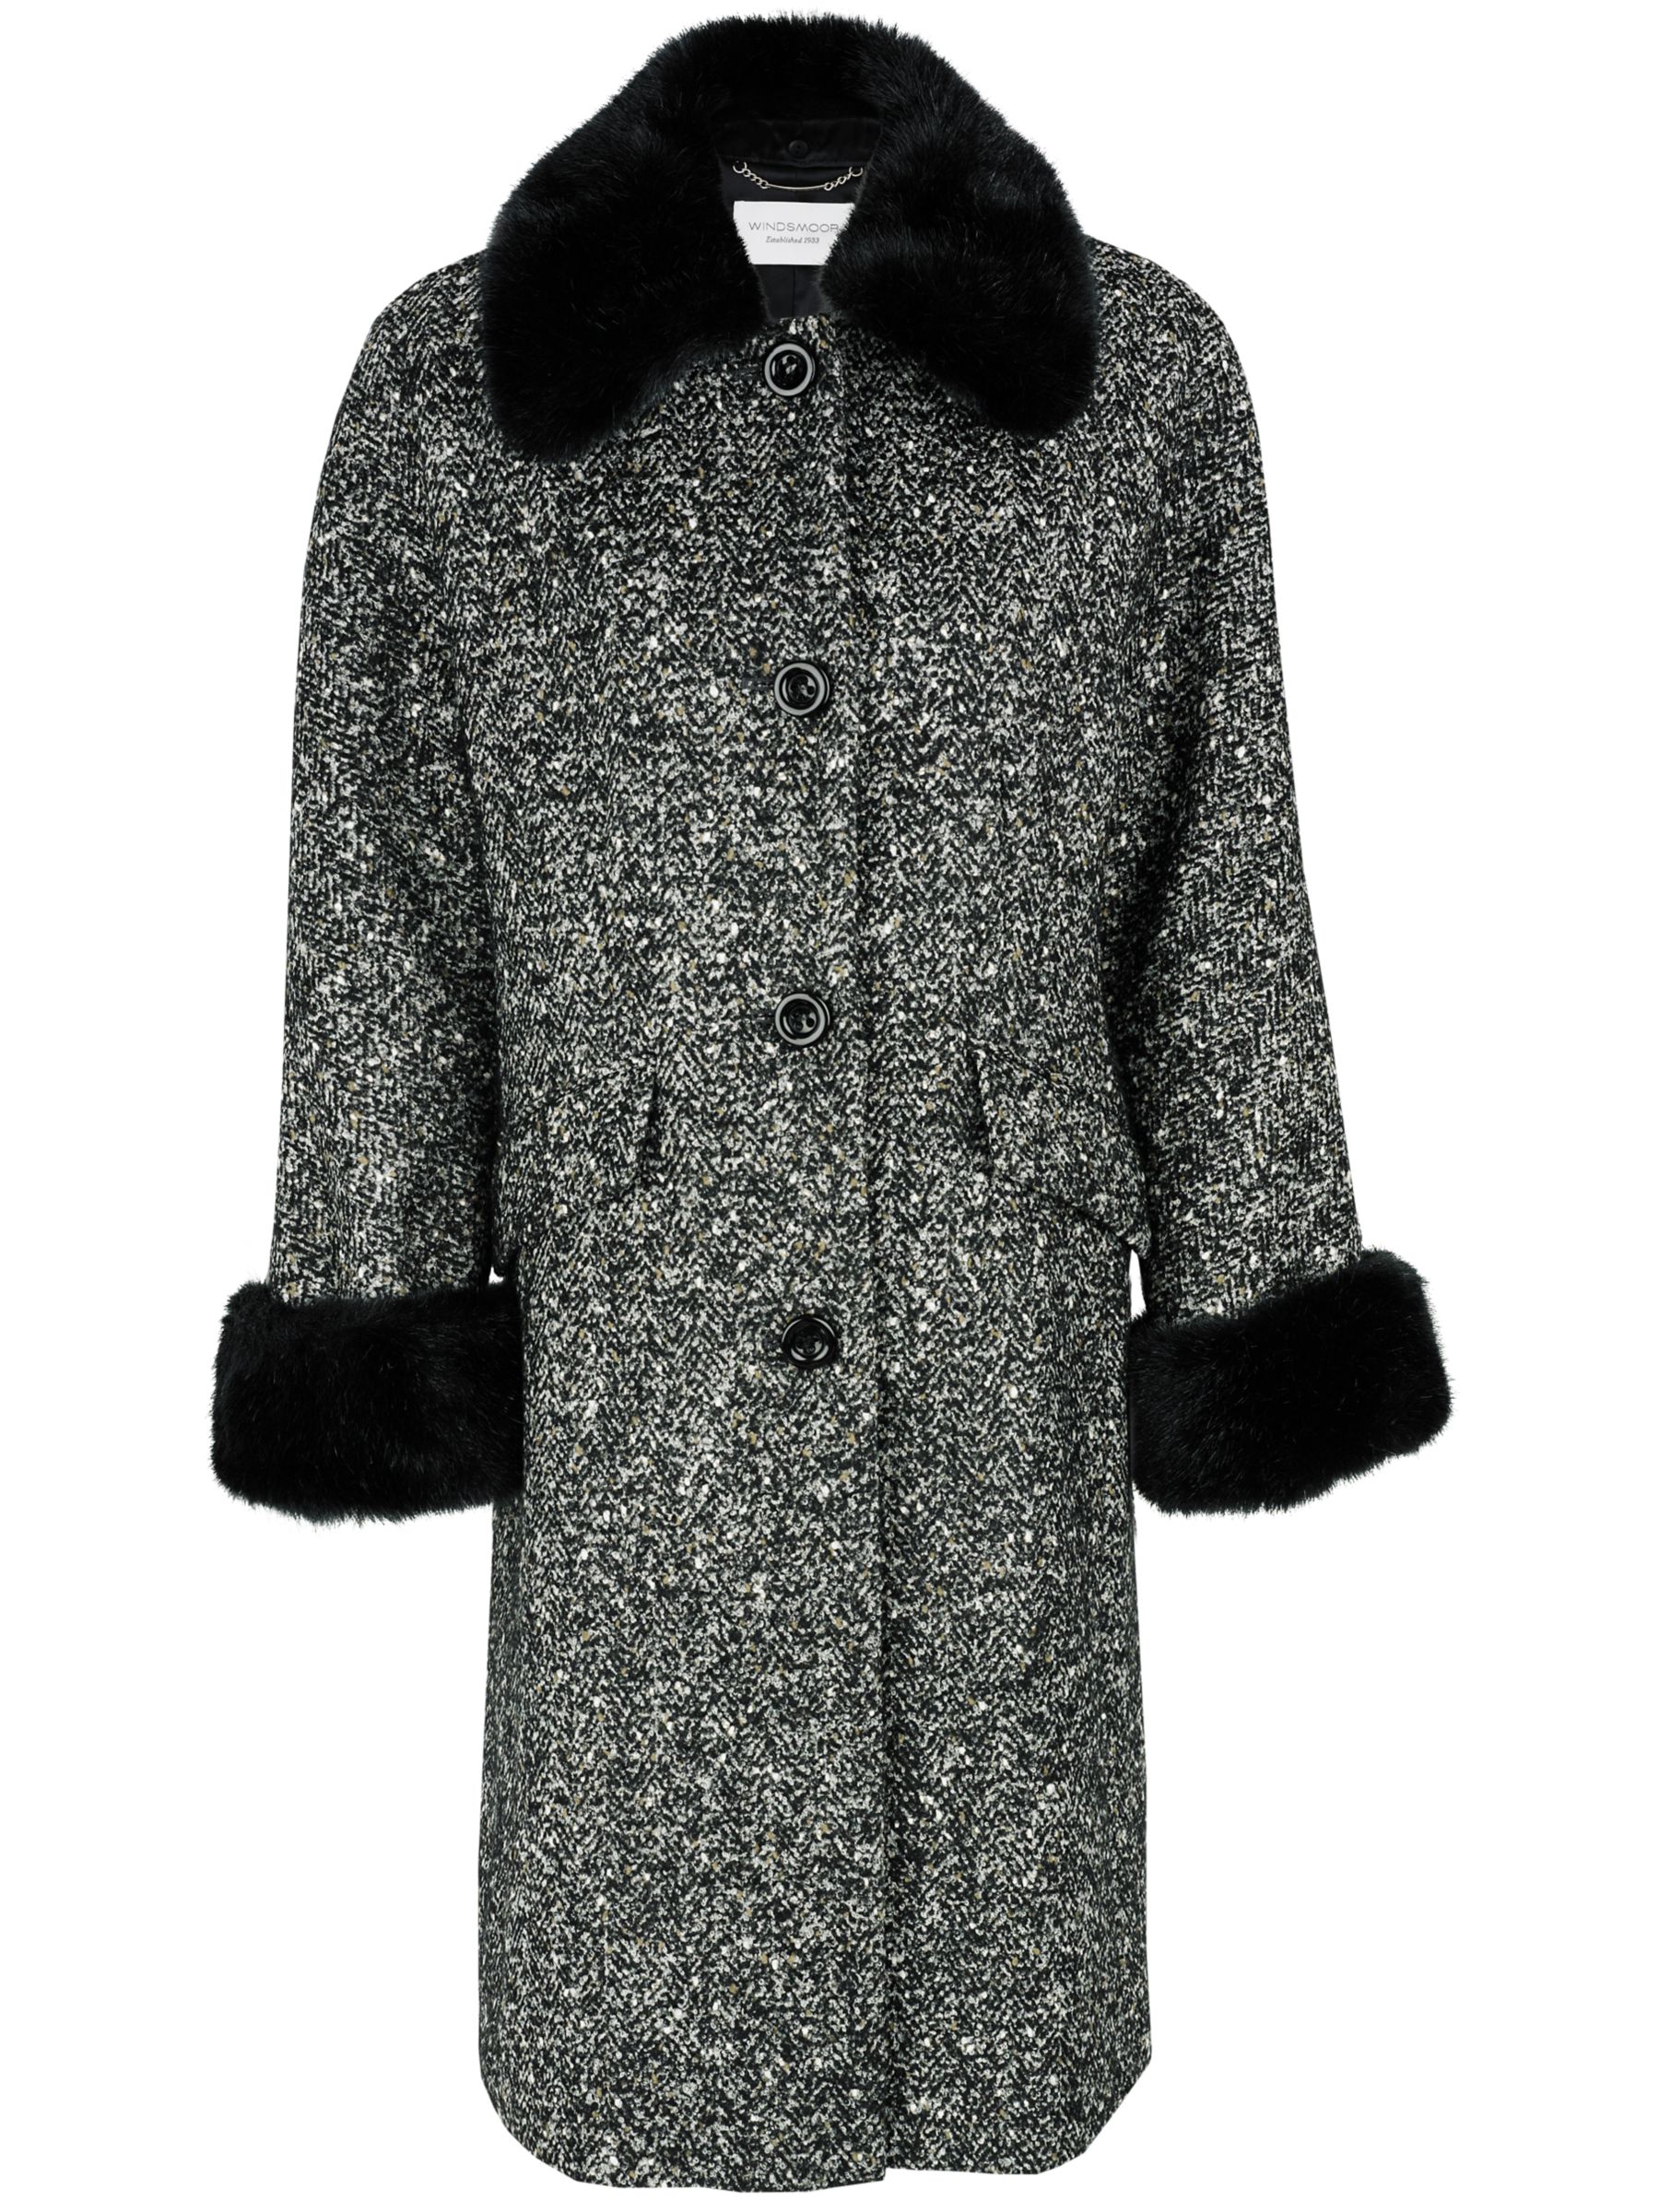 Windsmoor Luxury Tweed Fur Trim Coat, Black/white at John Lewis